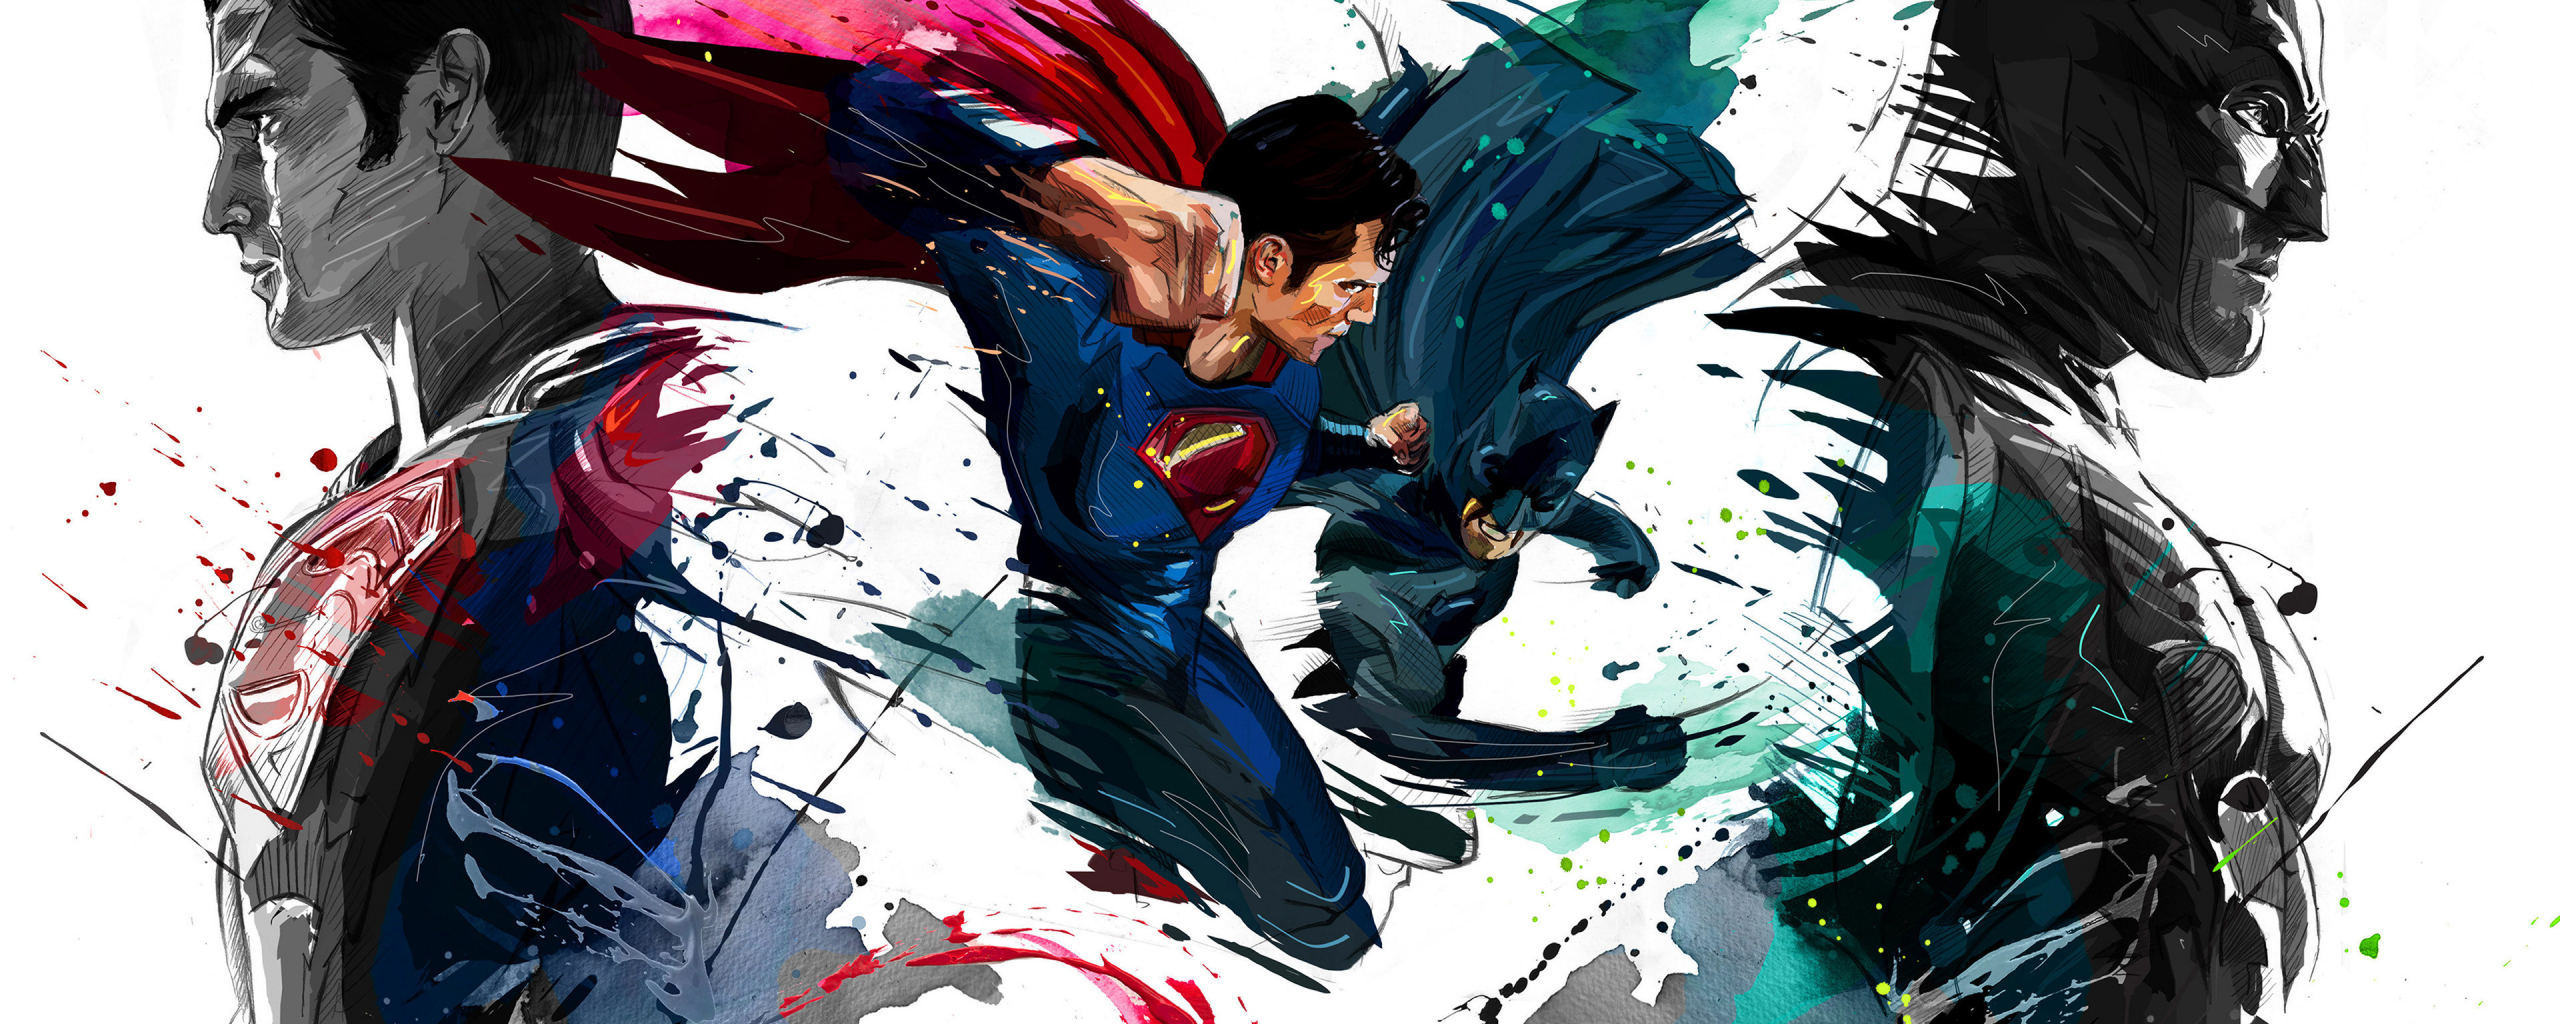 Batman vs superman, 4k, sketch artwork, 2560x1024 wallpaper